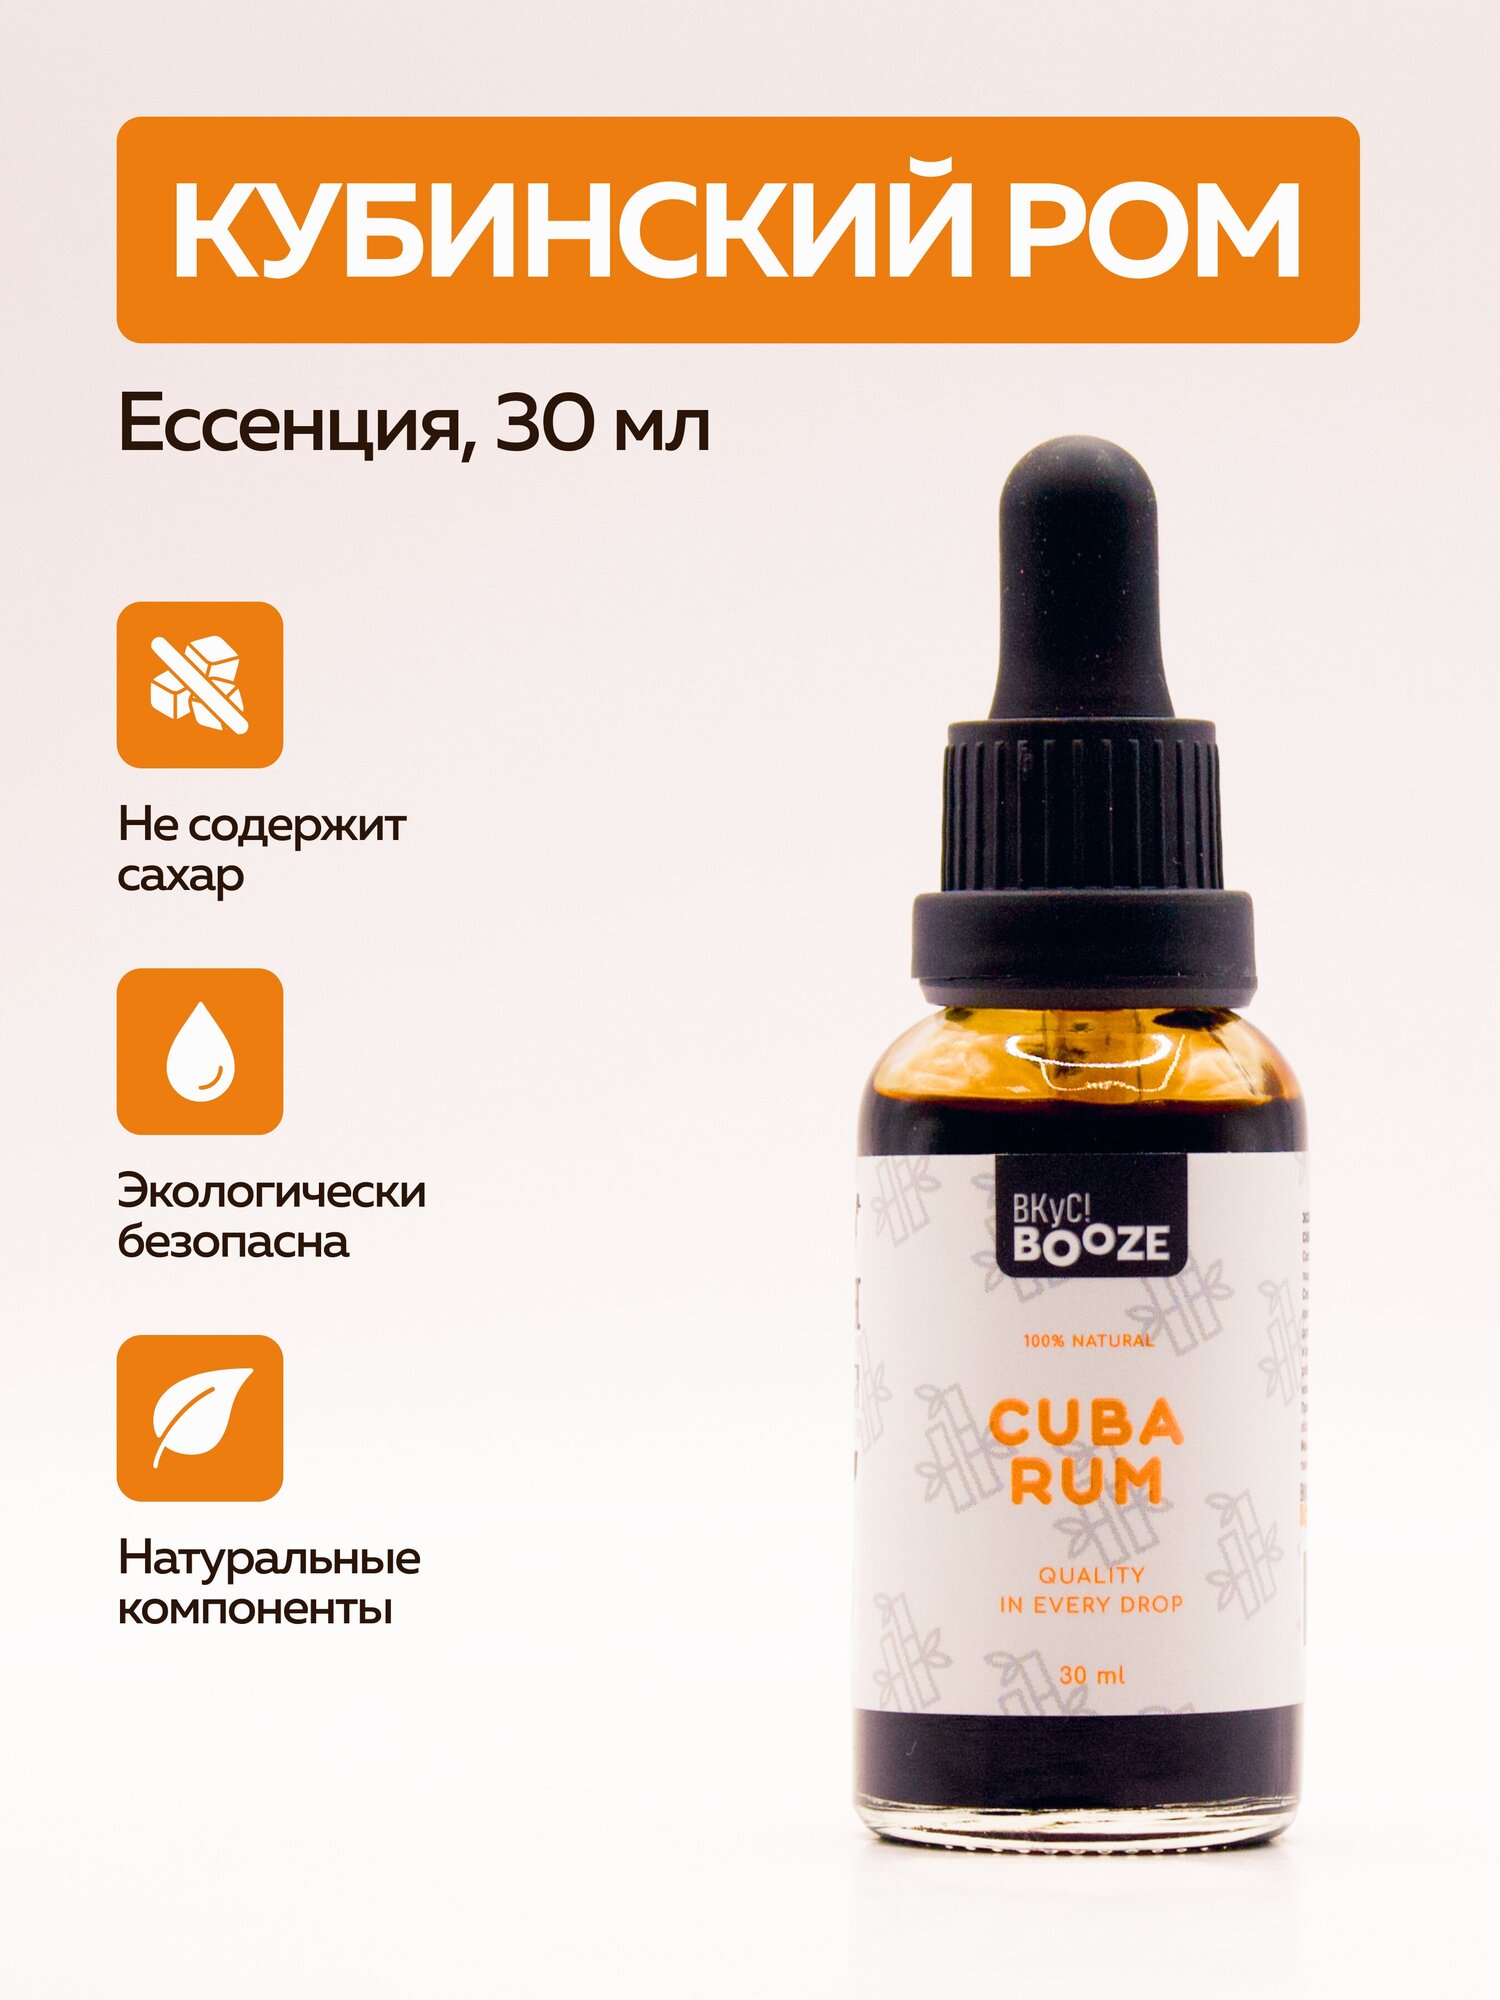 Эссенция Cuba Rum (Кубинский Ром) 30 ml Вкус! Booze